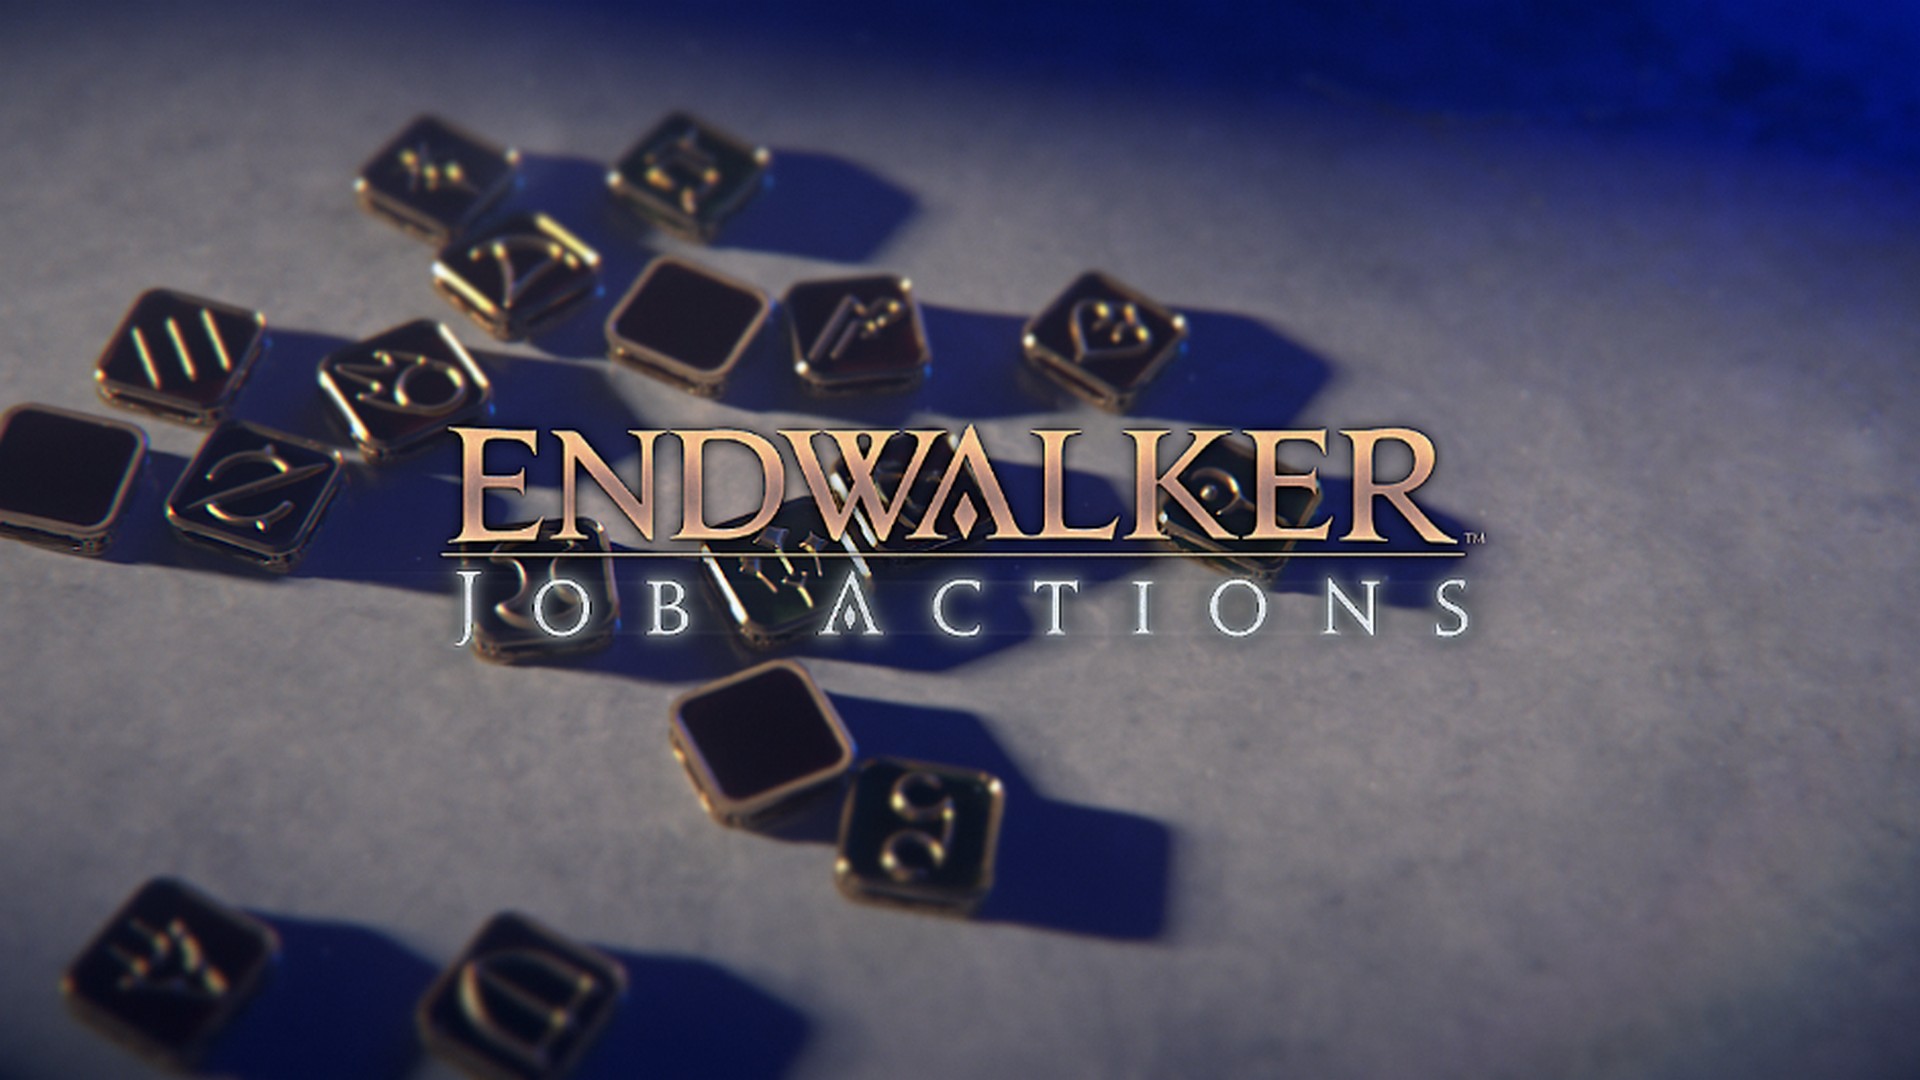 Final Fantasy XIV: Endwalker Job Actions Trailer Debuts Alongside Gameplay Updates & More